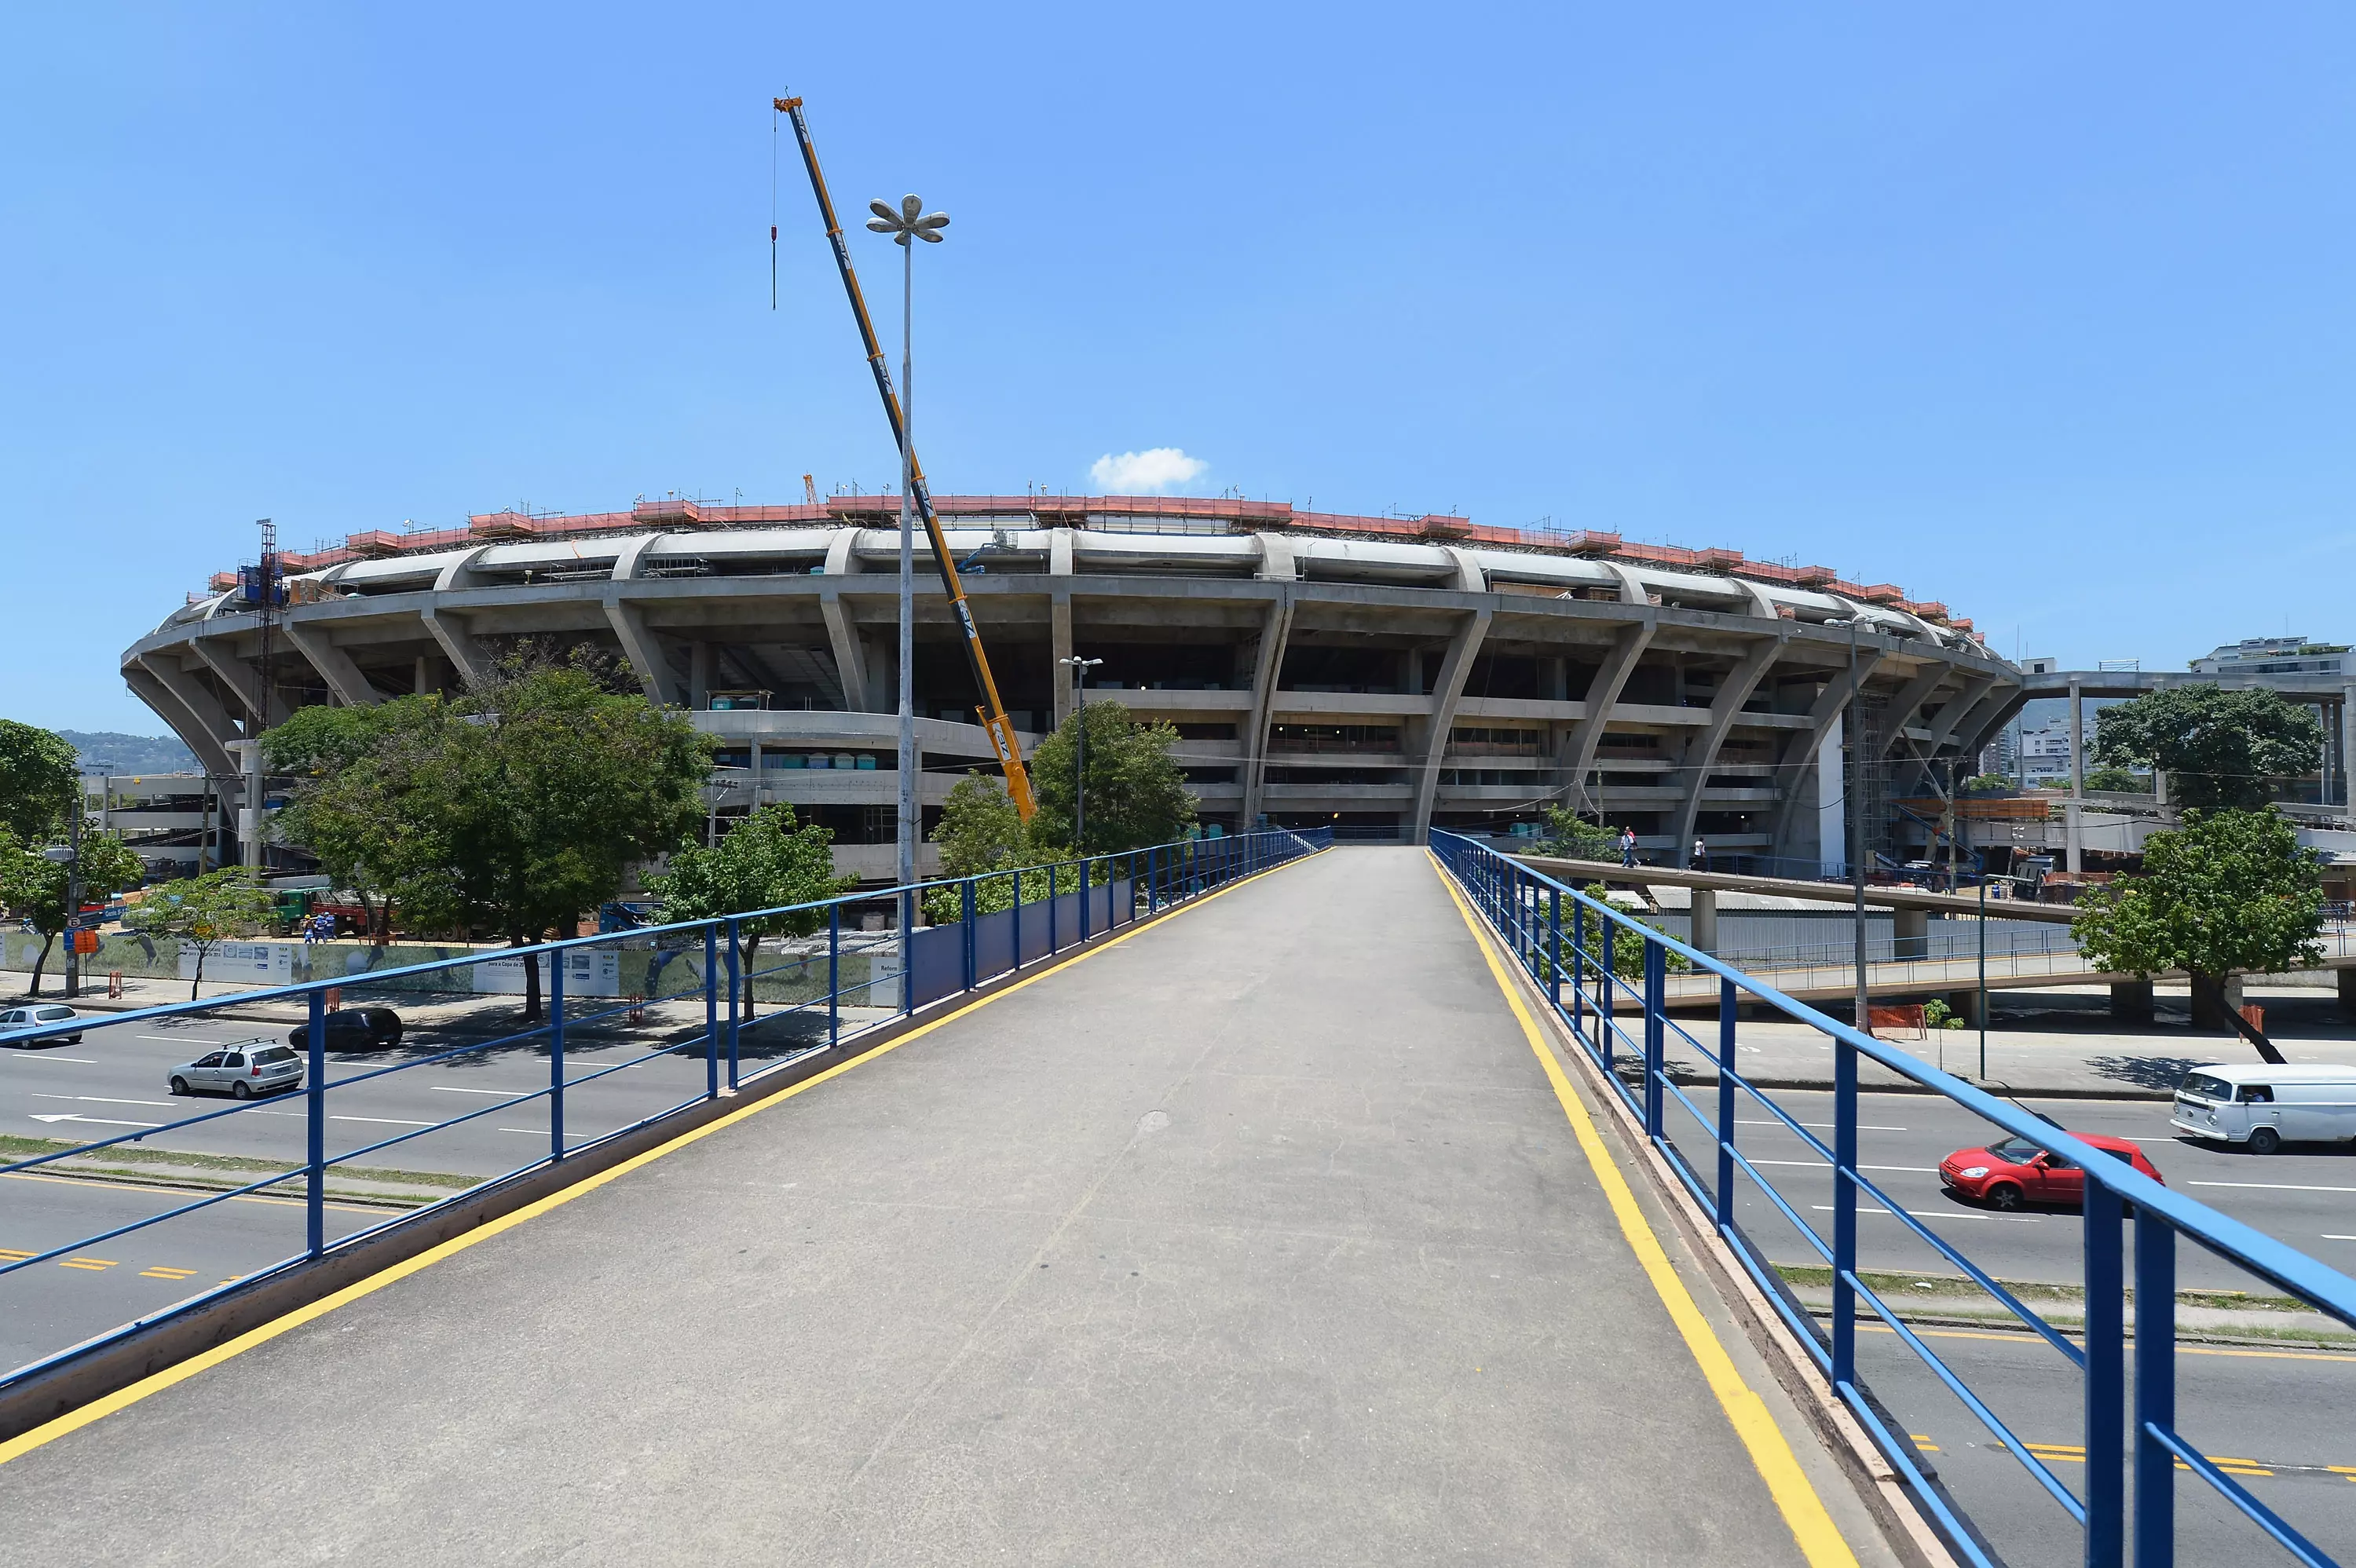 אצטדיון המרקאנה בריו דה ז'ניירו